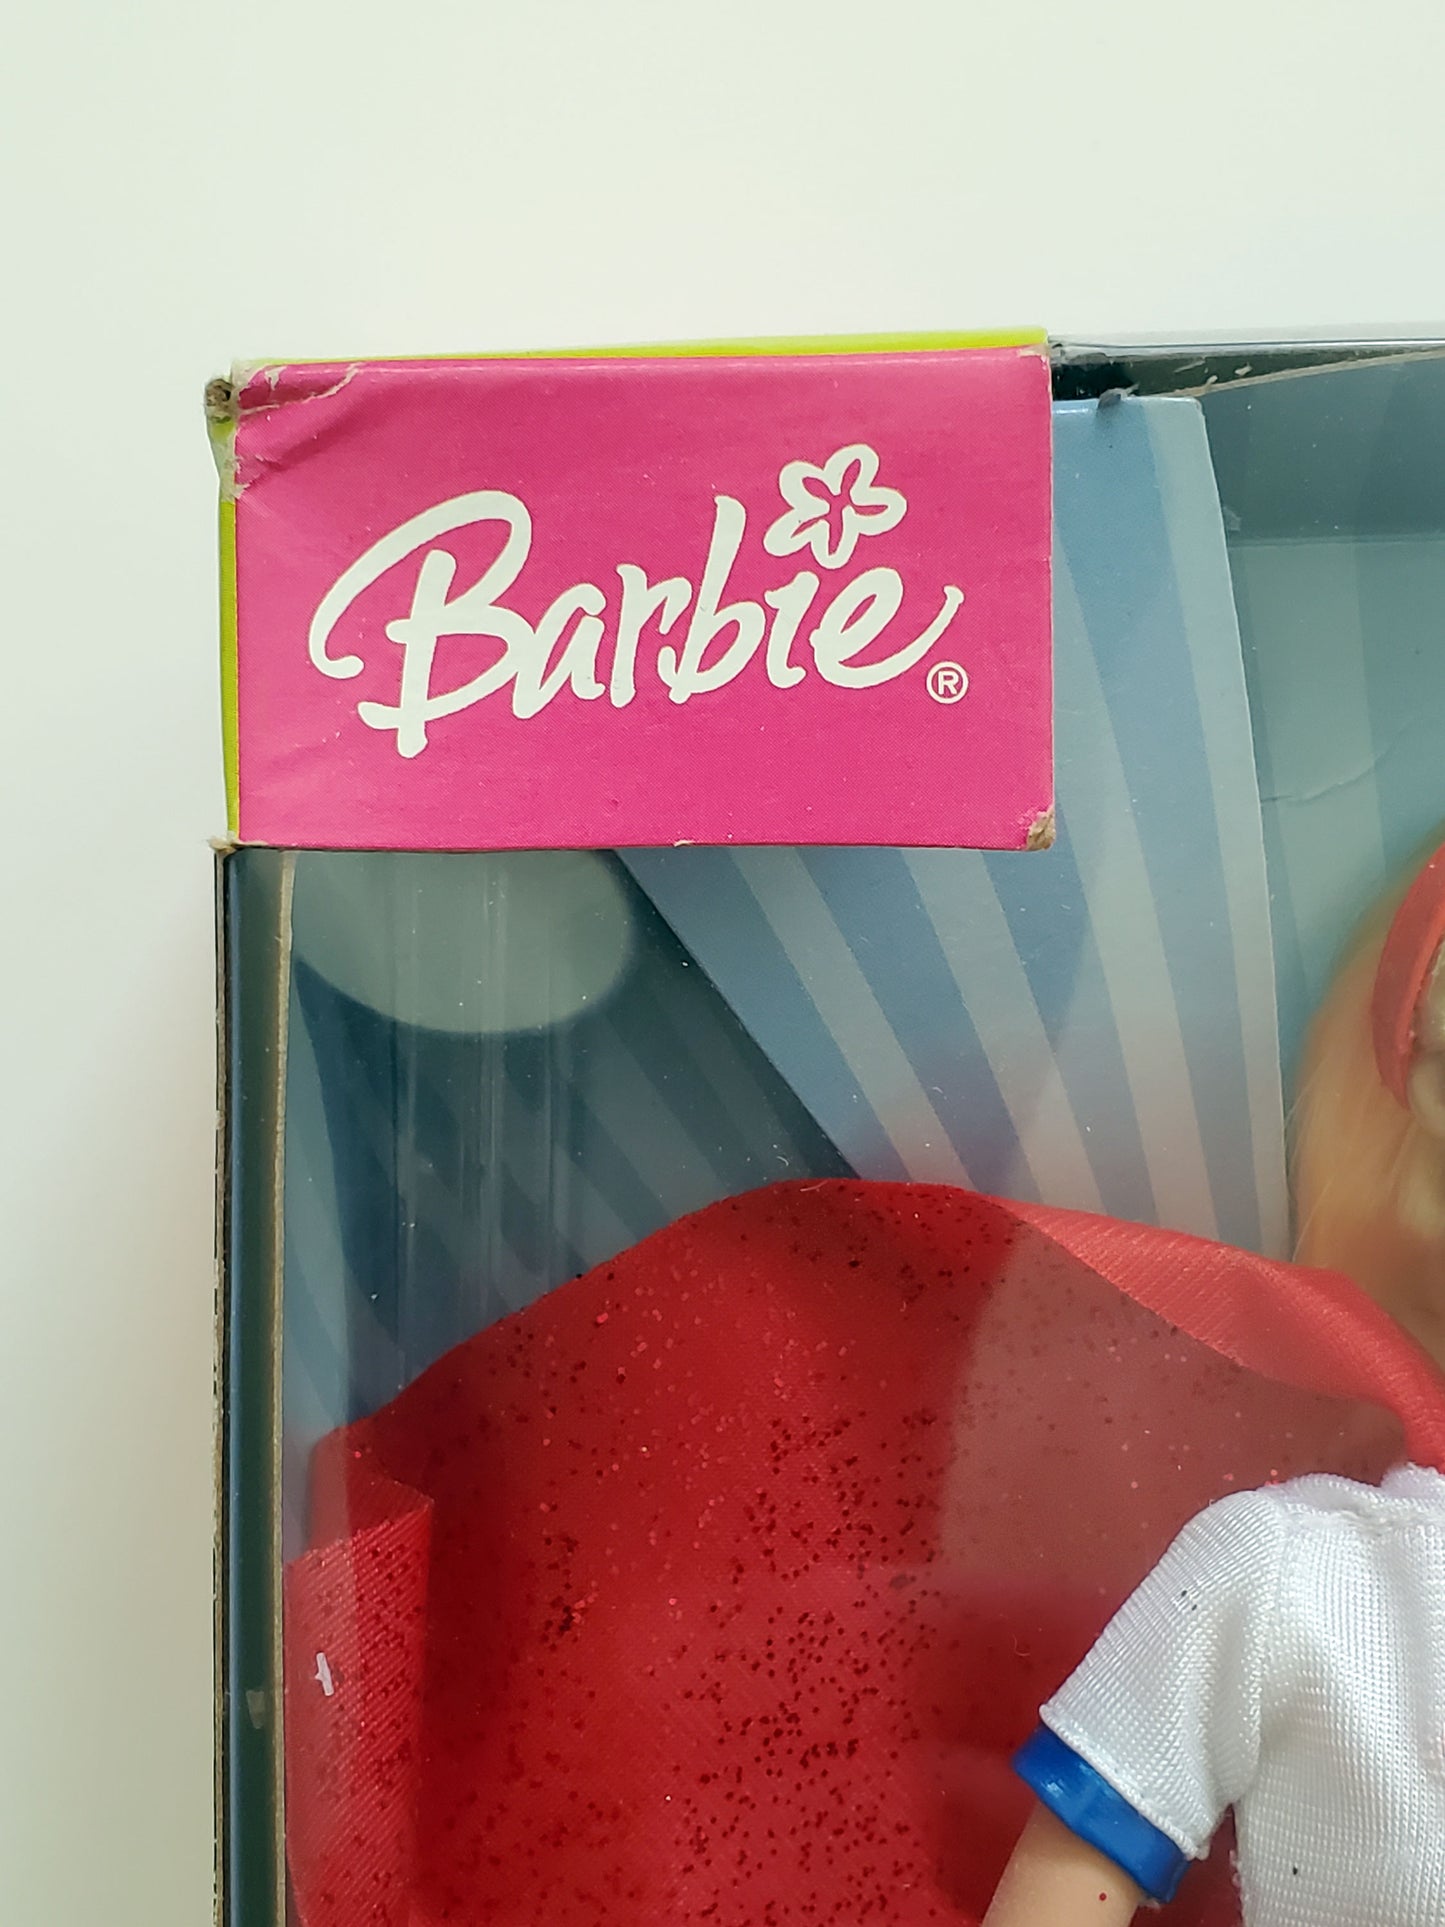 Barbie as Supergirl